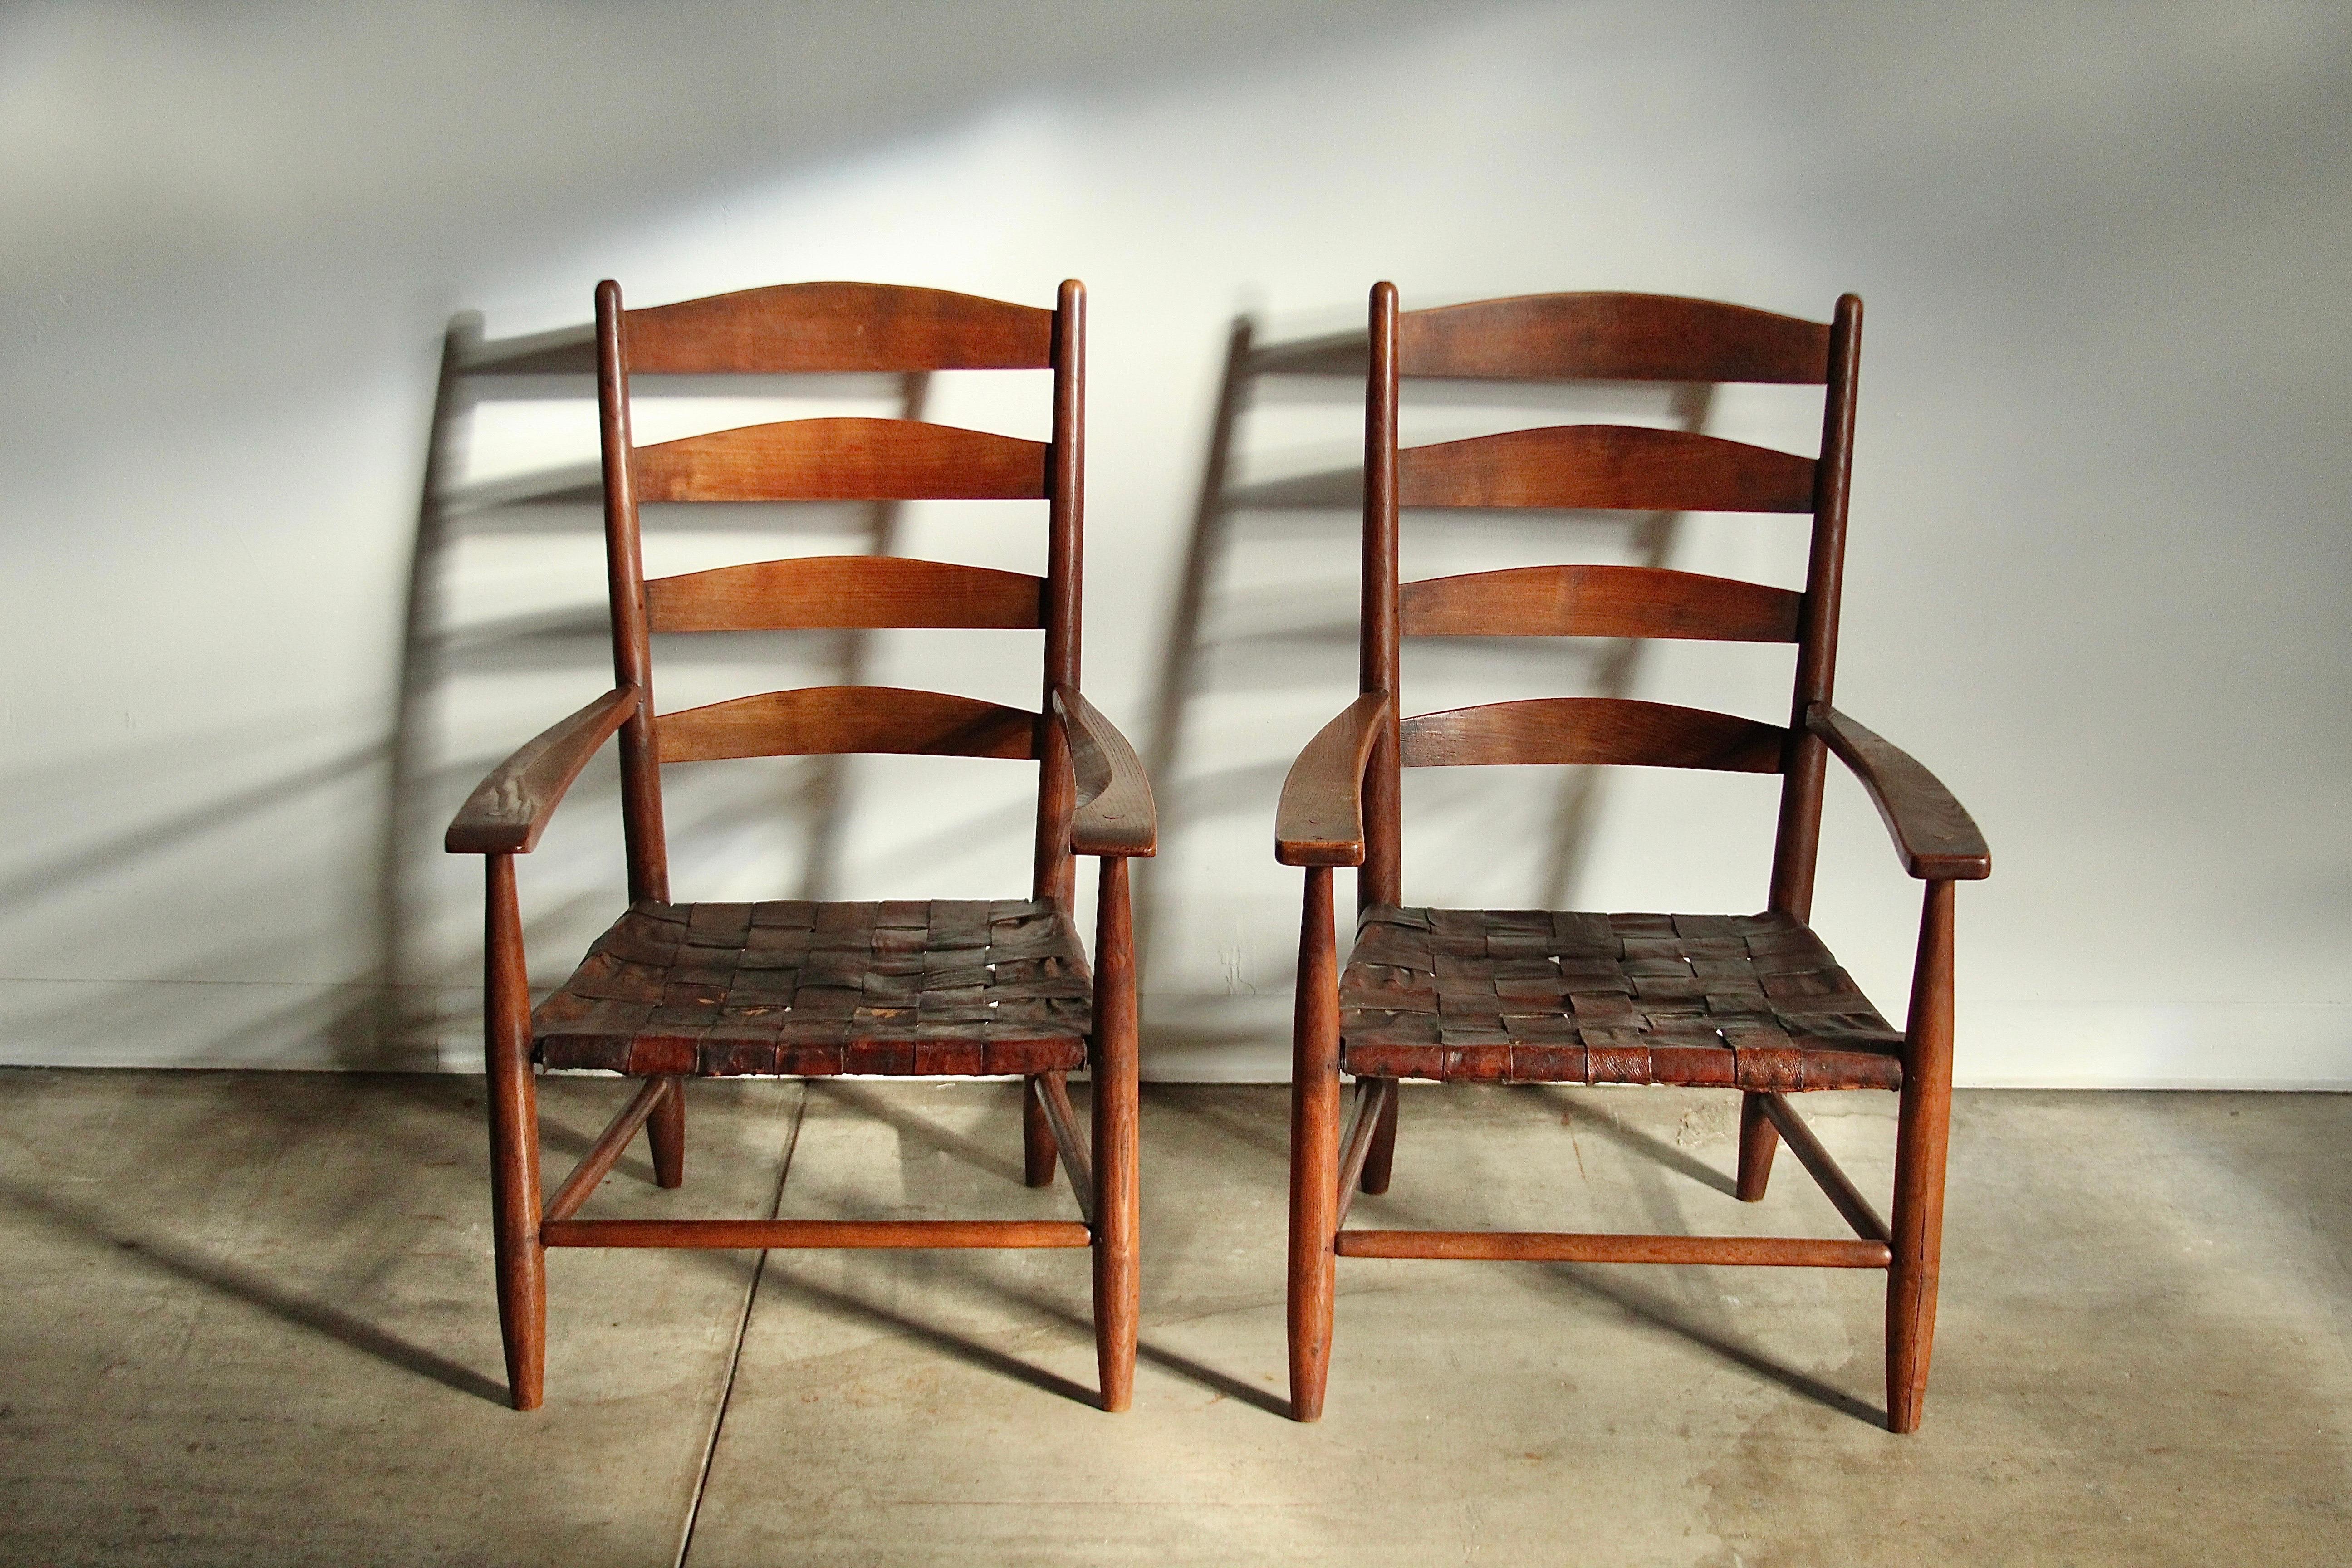 Ein wahres Paar von Artefakten! Dieses Paar großer Sessel im Shaker-Stil wurde um 1904 von Gordon Russell in Broadway, England, entworfen und gebaut. Die Stühle zeichnen sich durch eine unglaubliche, handgefertigte Zapfenkonstruktion aus und sind